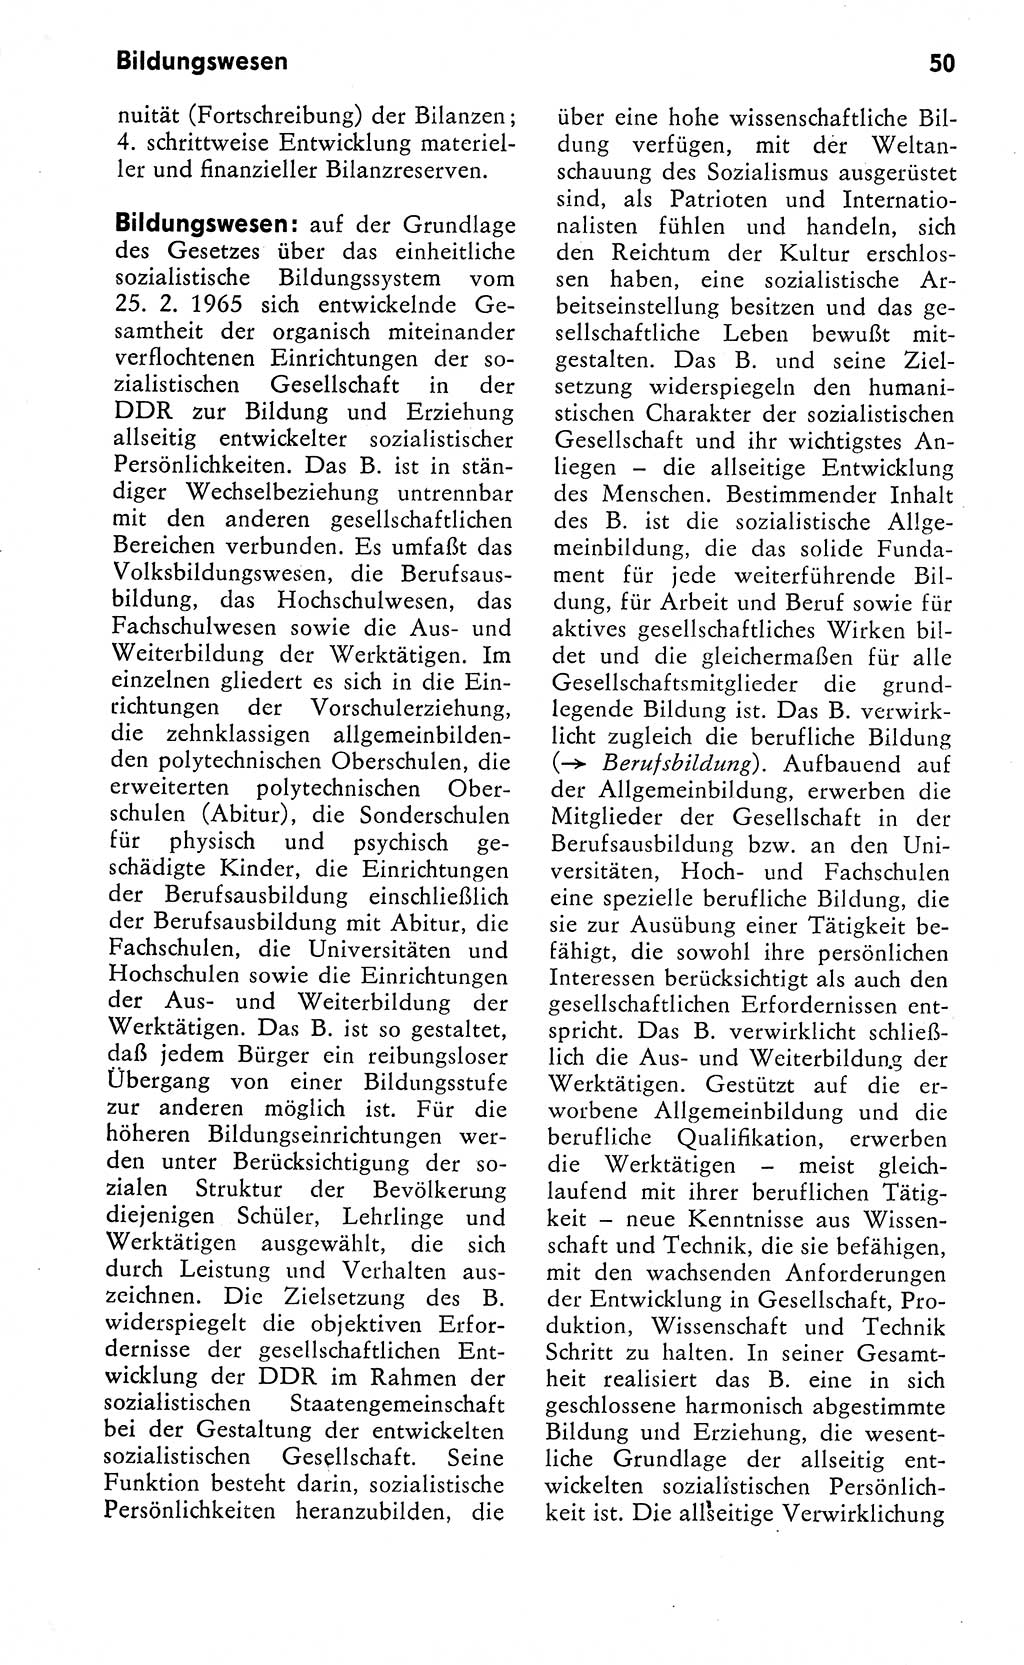 Wörterbuch zum sozialistischen Staat [Deutsche Demokratische Republik (DDR)] 1974, Seite 50 (Wb. soz. St. DDR 1974, S. 50)